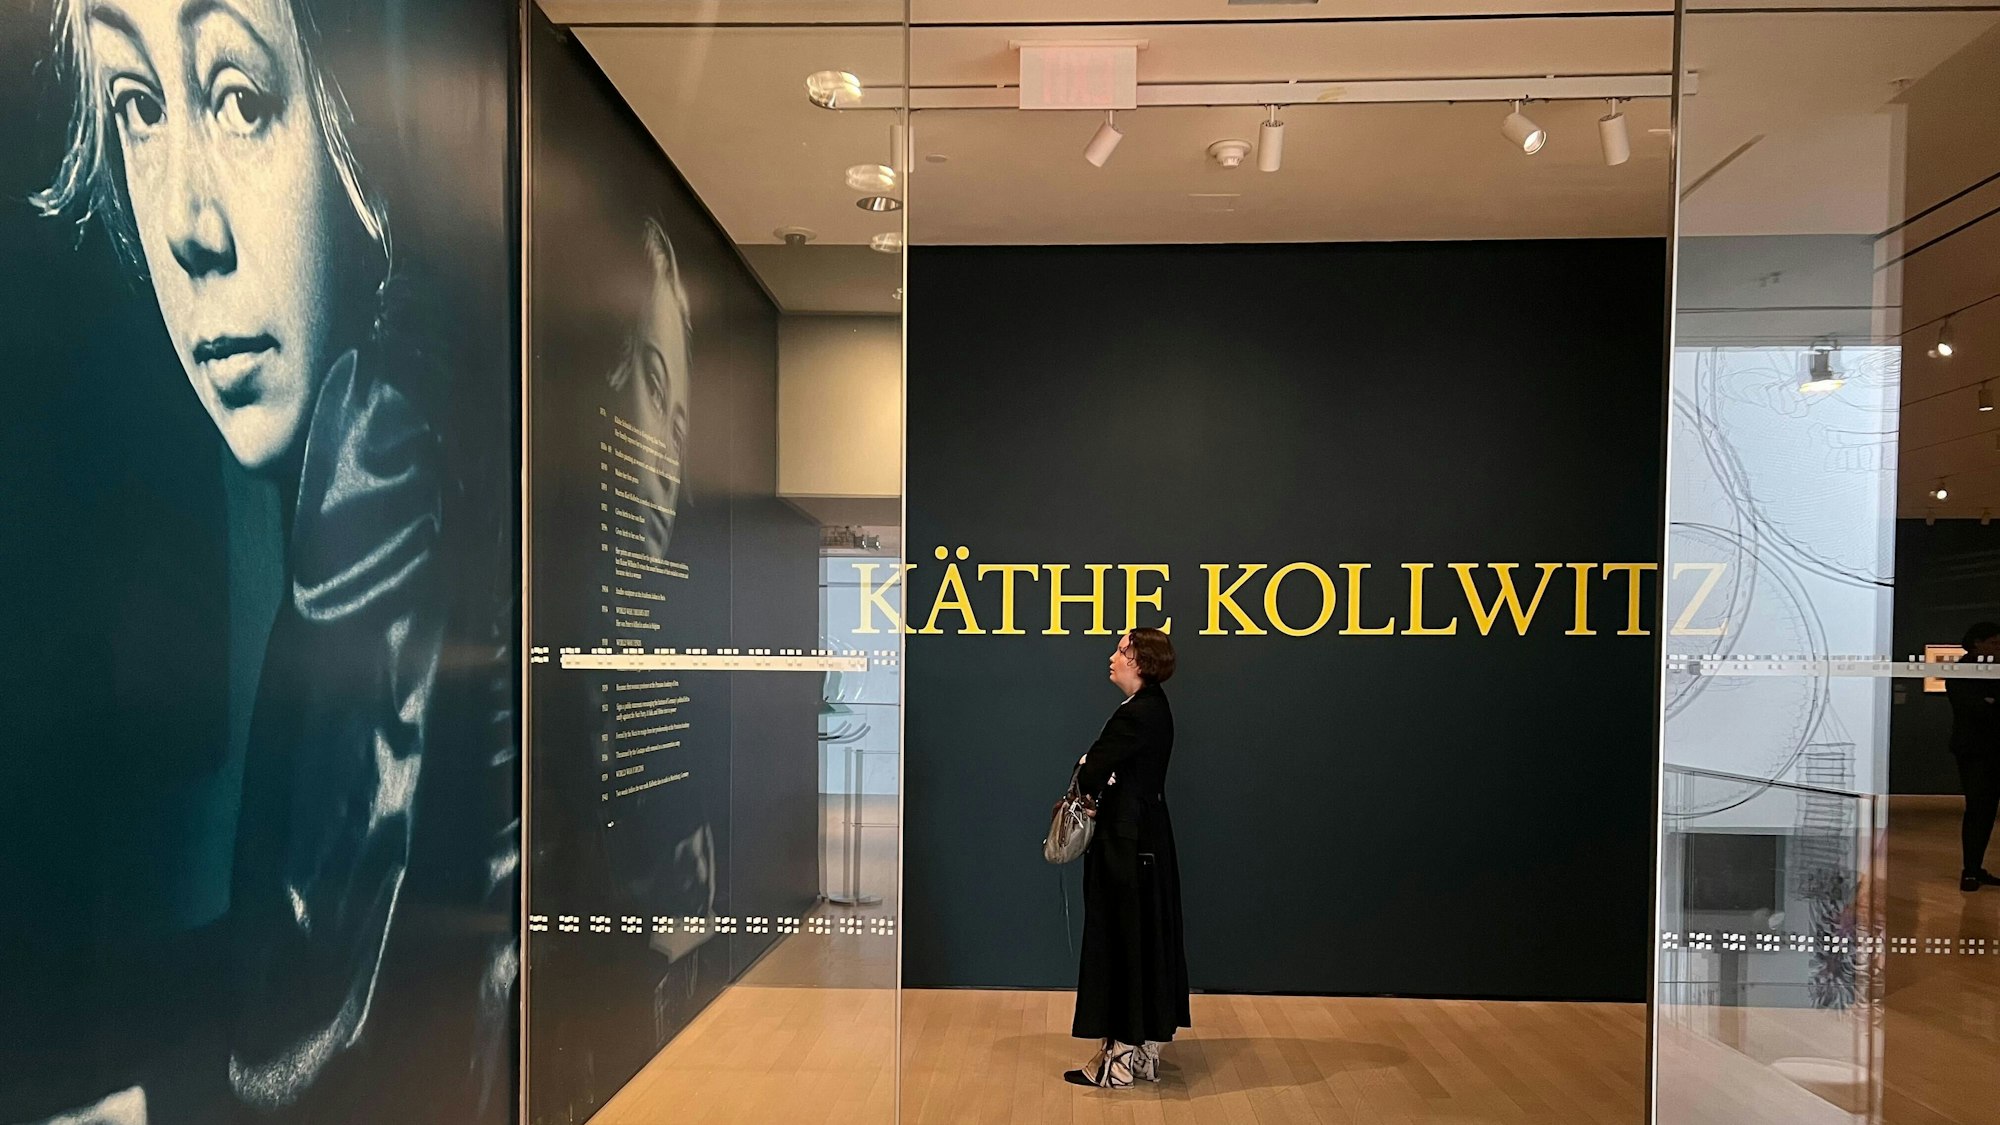 26.03.2024, USA, New York: Eingang zur Ausstellung «Käthe Kollwitz» im New Yorker Museum of Modern Art (MoMA). Schon seit mehr als 30 Jahren gab es in den USA keine große Ausstellung mit Werken von Käthe Kollwitz mehr, in New York noch nie - aber jetzt ehrt das renommierte MoMA posthum die deutsche Künstlerin. (zu dpa «New Yorker MoMA zeigt große Käthe-Kollwitz-Schau») Foto: Christina Horsten/dpa - ACHTUNG: Nur zur redaktionellen Verwendung im Zusammenhang mit einer Berichterstattung über die Ausstellung und nur mit vollständiger Nennung des vorstehenden Credits +++ dpa-Bildfunk +++